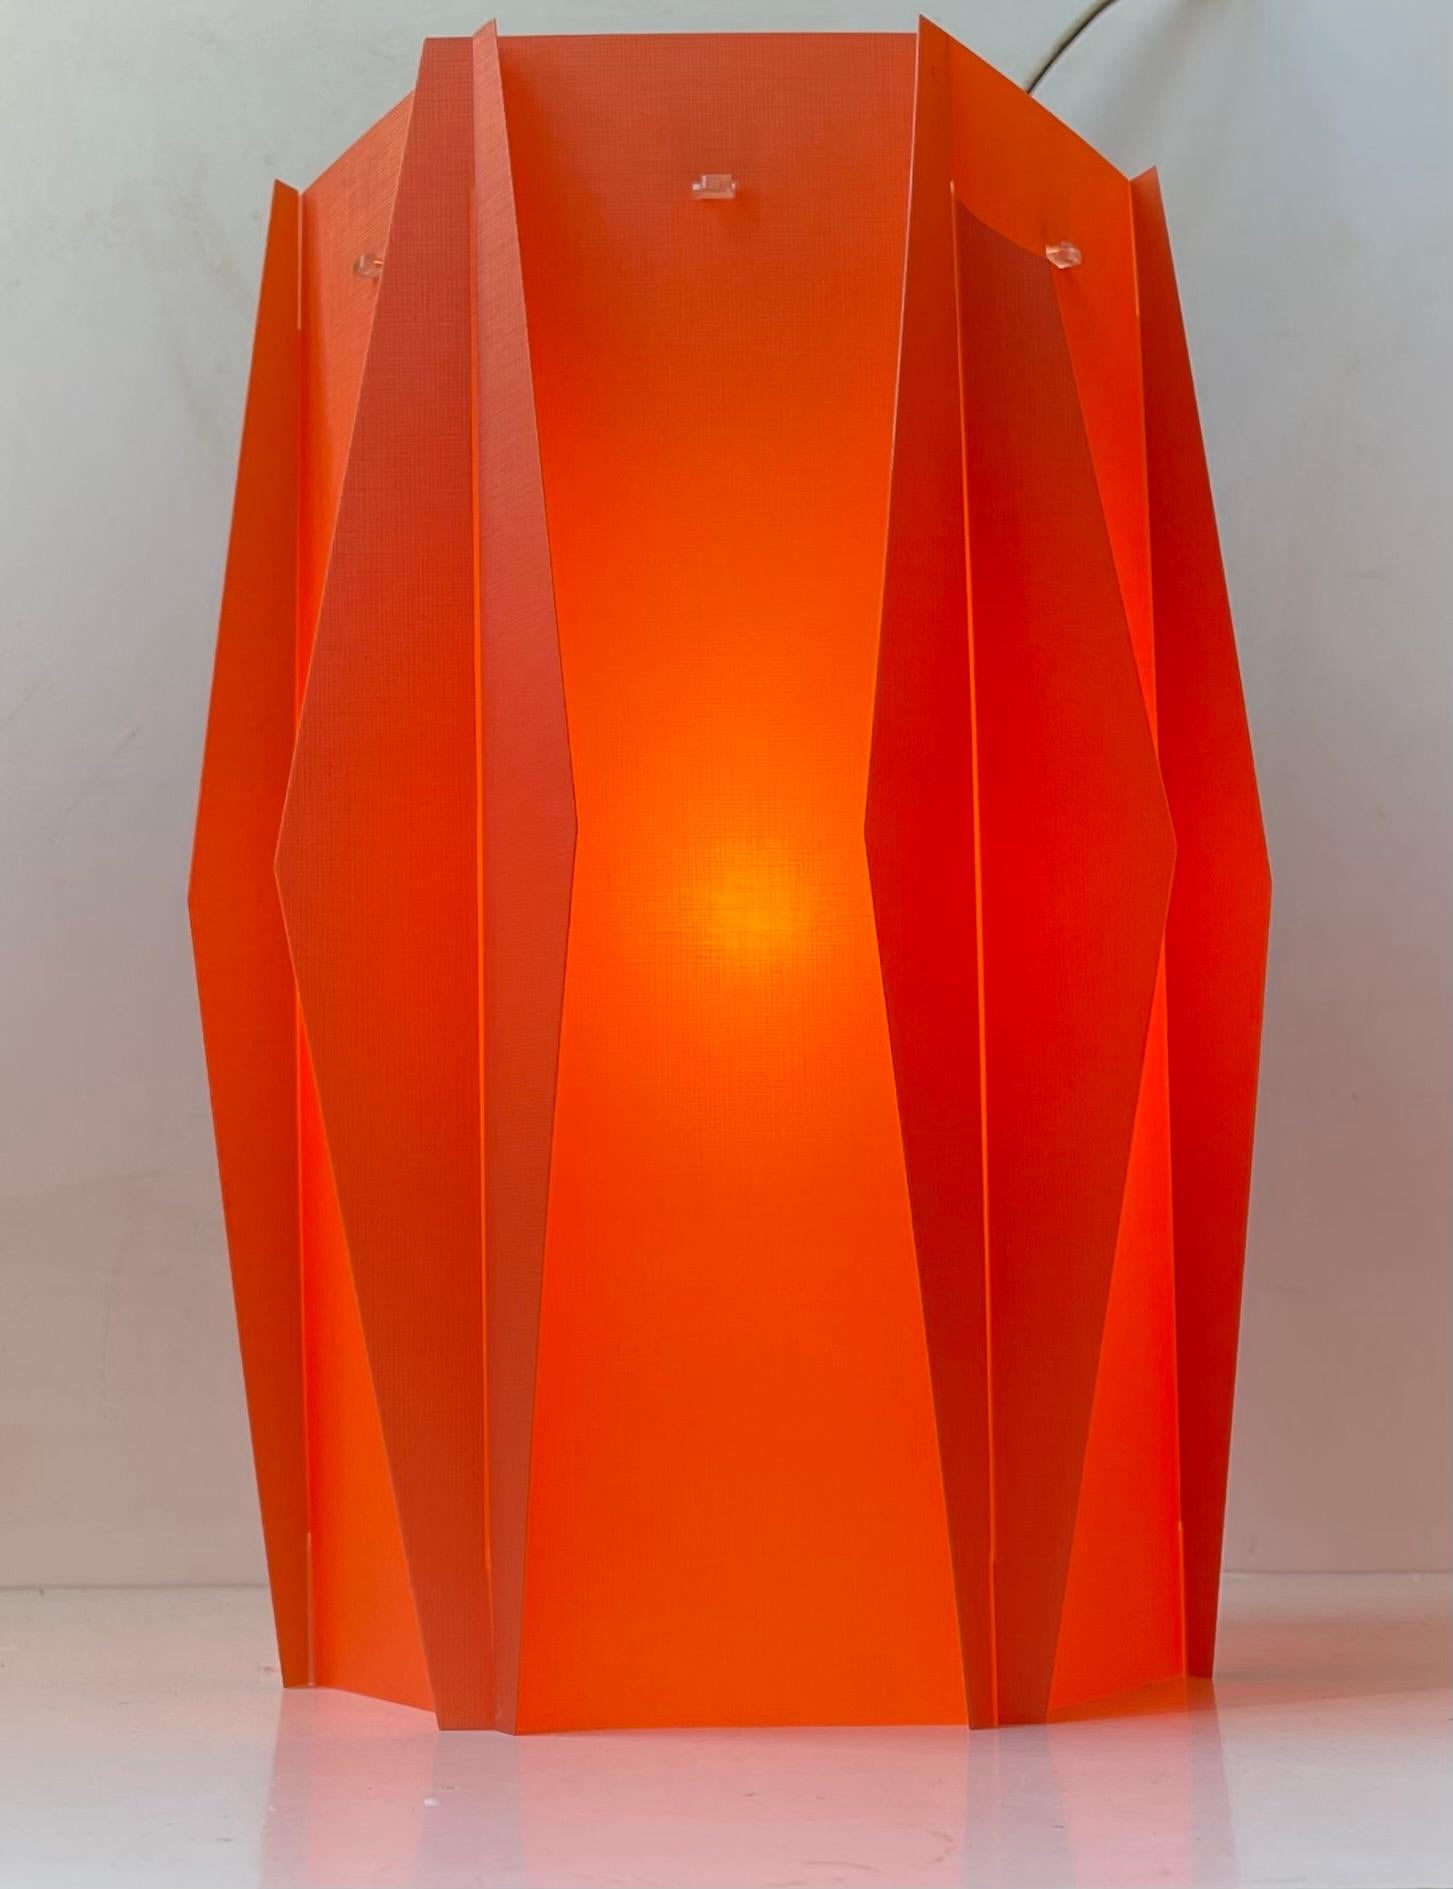 Danish Modern Lars Eiler Schiøler Coral Harlequin Hanging Lamp for Hoyrup, 1960s For Sale 1